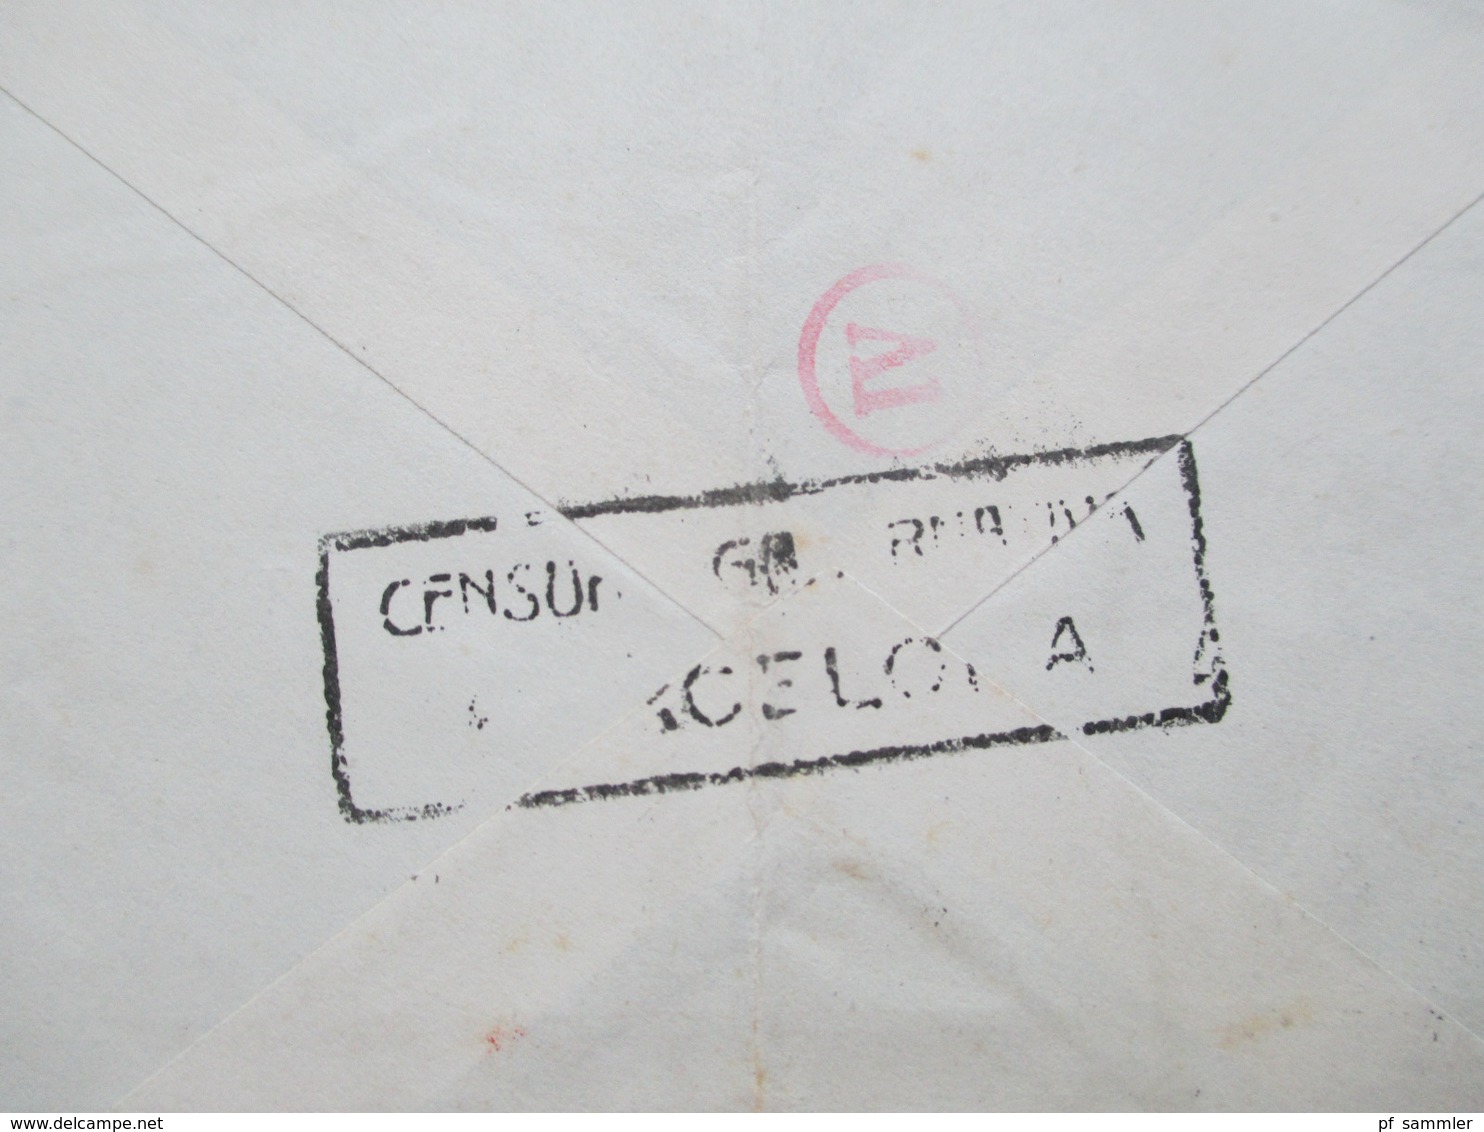 Spanien 1943 Luftpostbrief Barcelona - Berlin Mit Spanischer Zensur Und OKW Zensur Censura Barcelona Mehrfachzensur - Briefe U. Dokumente